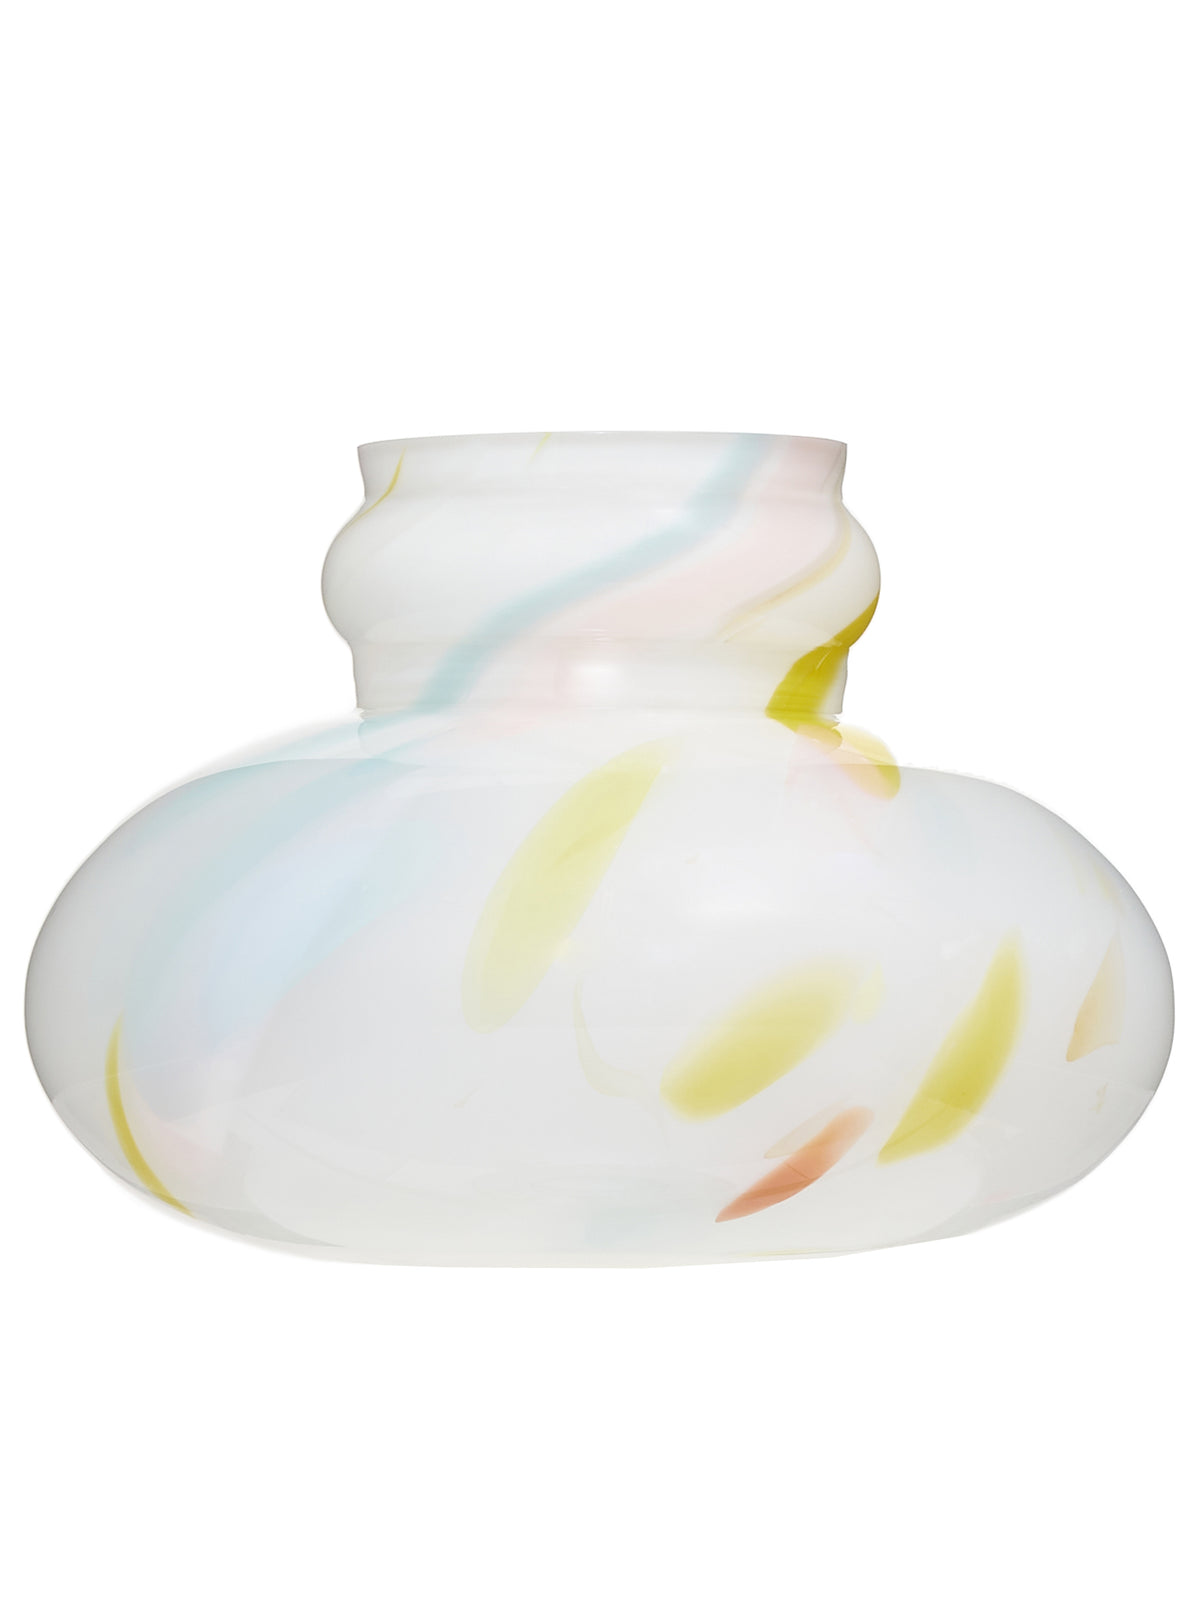 Limone Vase (GELATO-LIMONE-YELLOW)